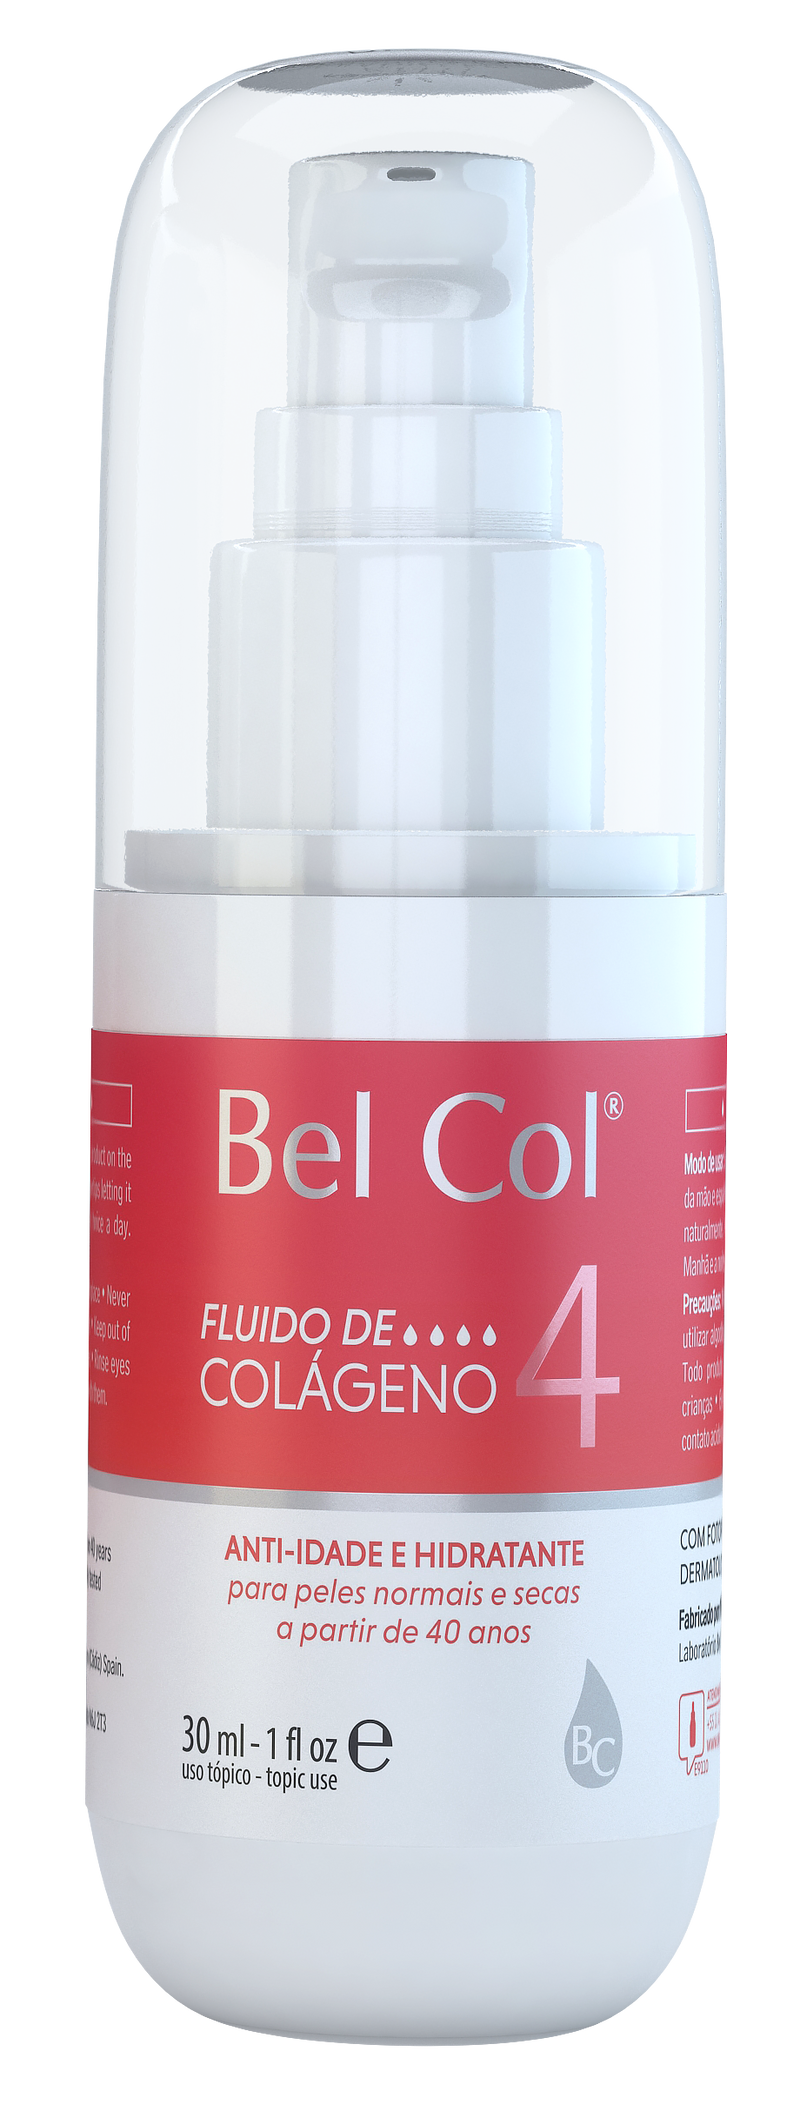 Bel Col 4 - Fluido de colageno 30 ML